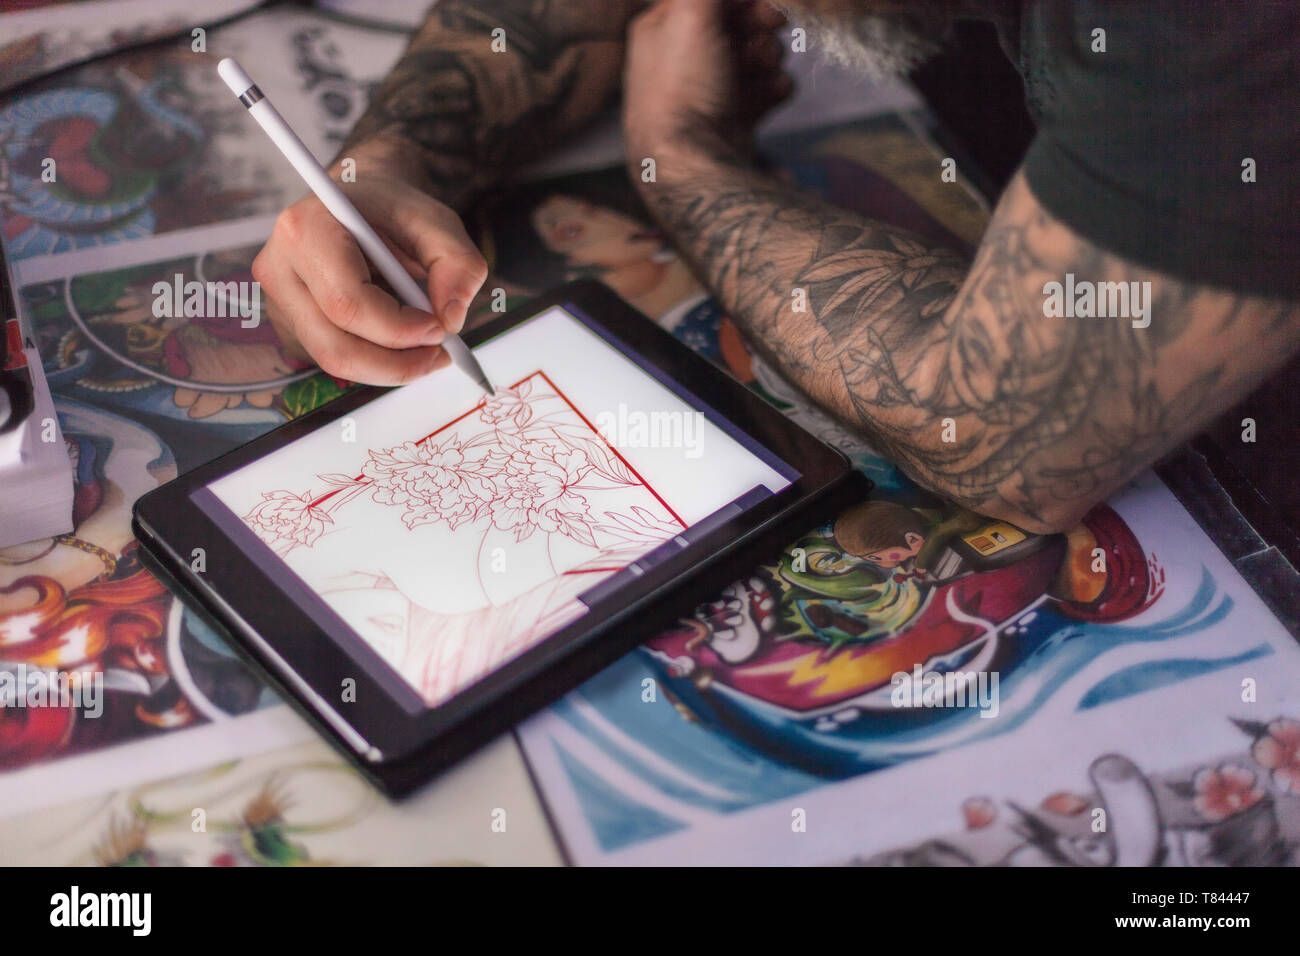 Croquis design tattoo tatoueur sur tablette numérique Banque D'Images